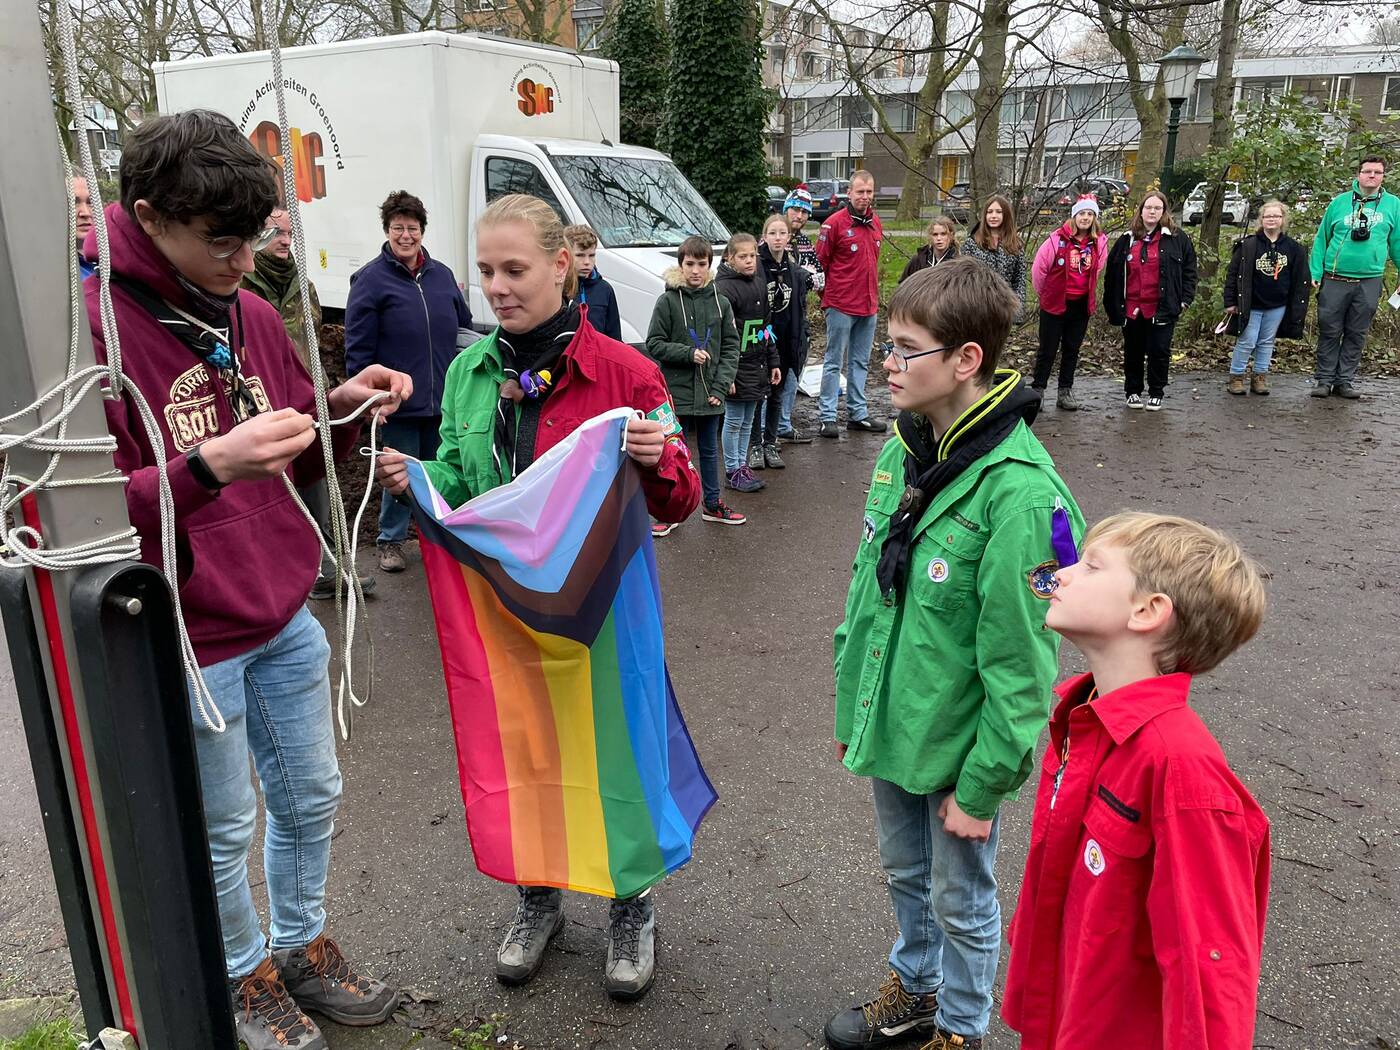 De Scouting Tono-groep ontving de regenboogvlag uit handen van Dorinde Hoogstedenm namens de gemeente Schiedam